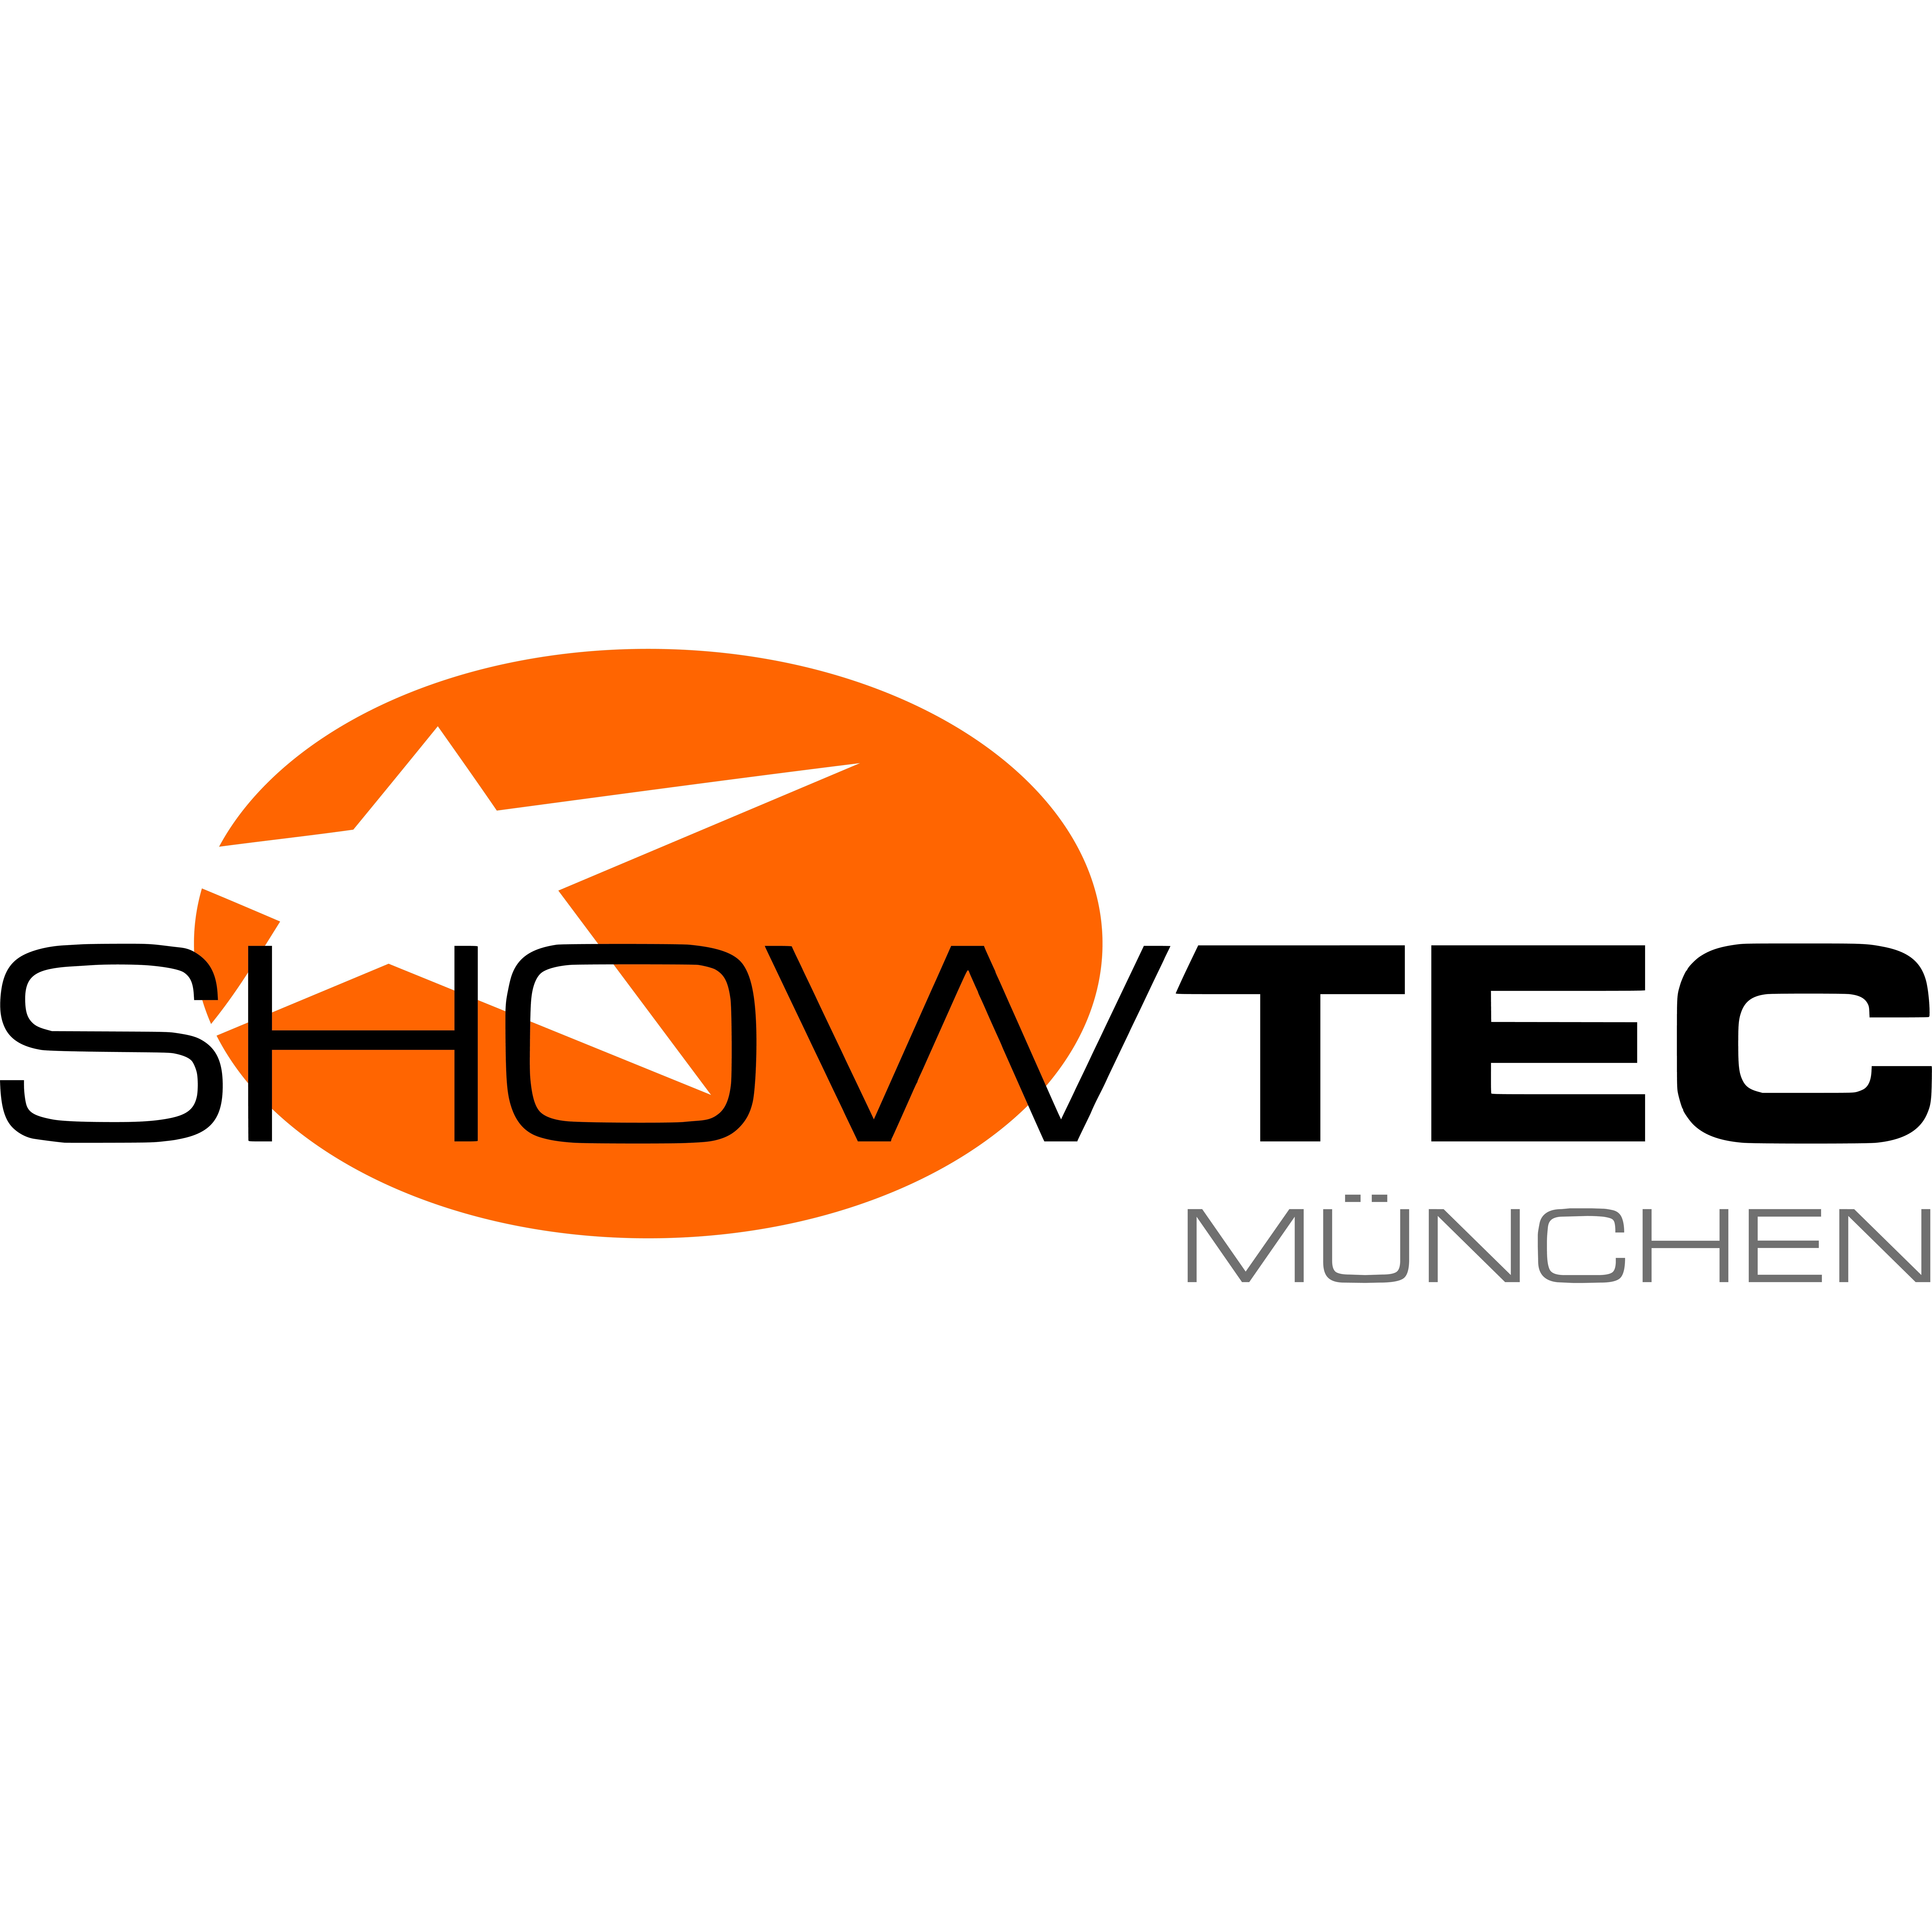 SHOWTEC München GmbH in Unterföhring - Logo